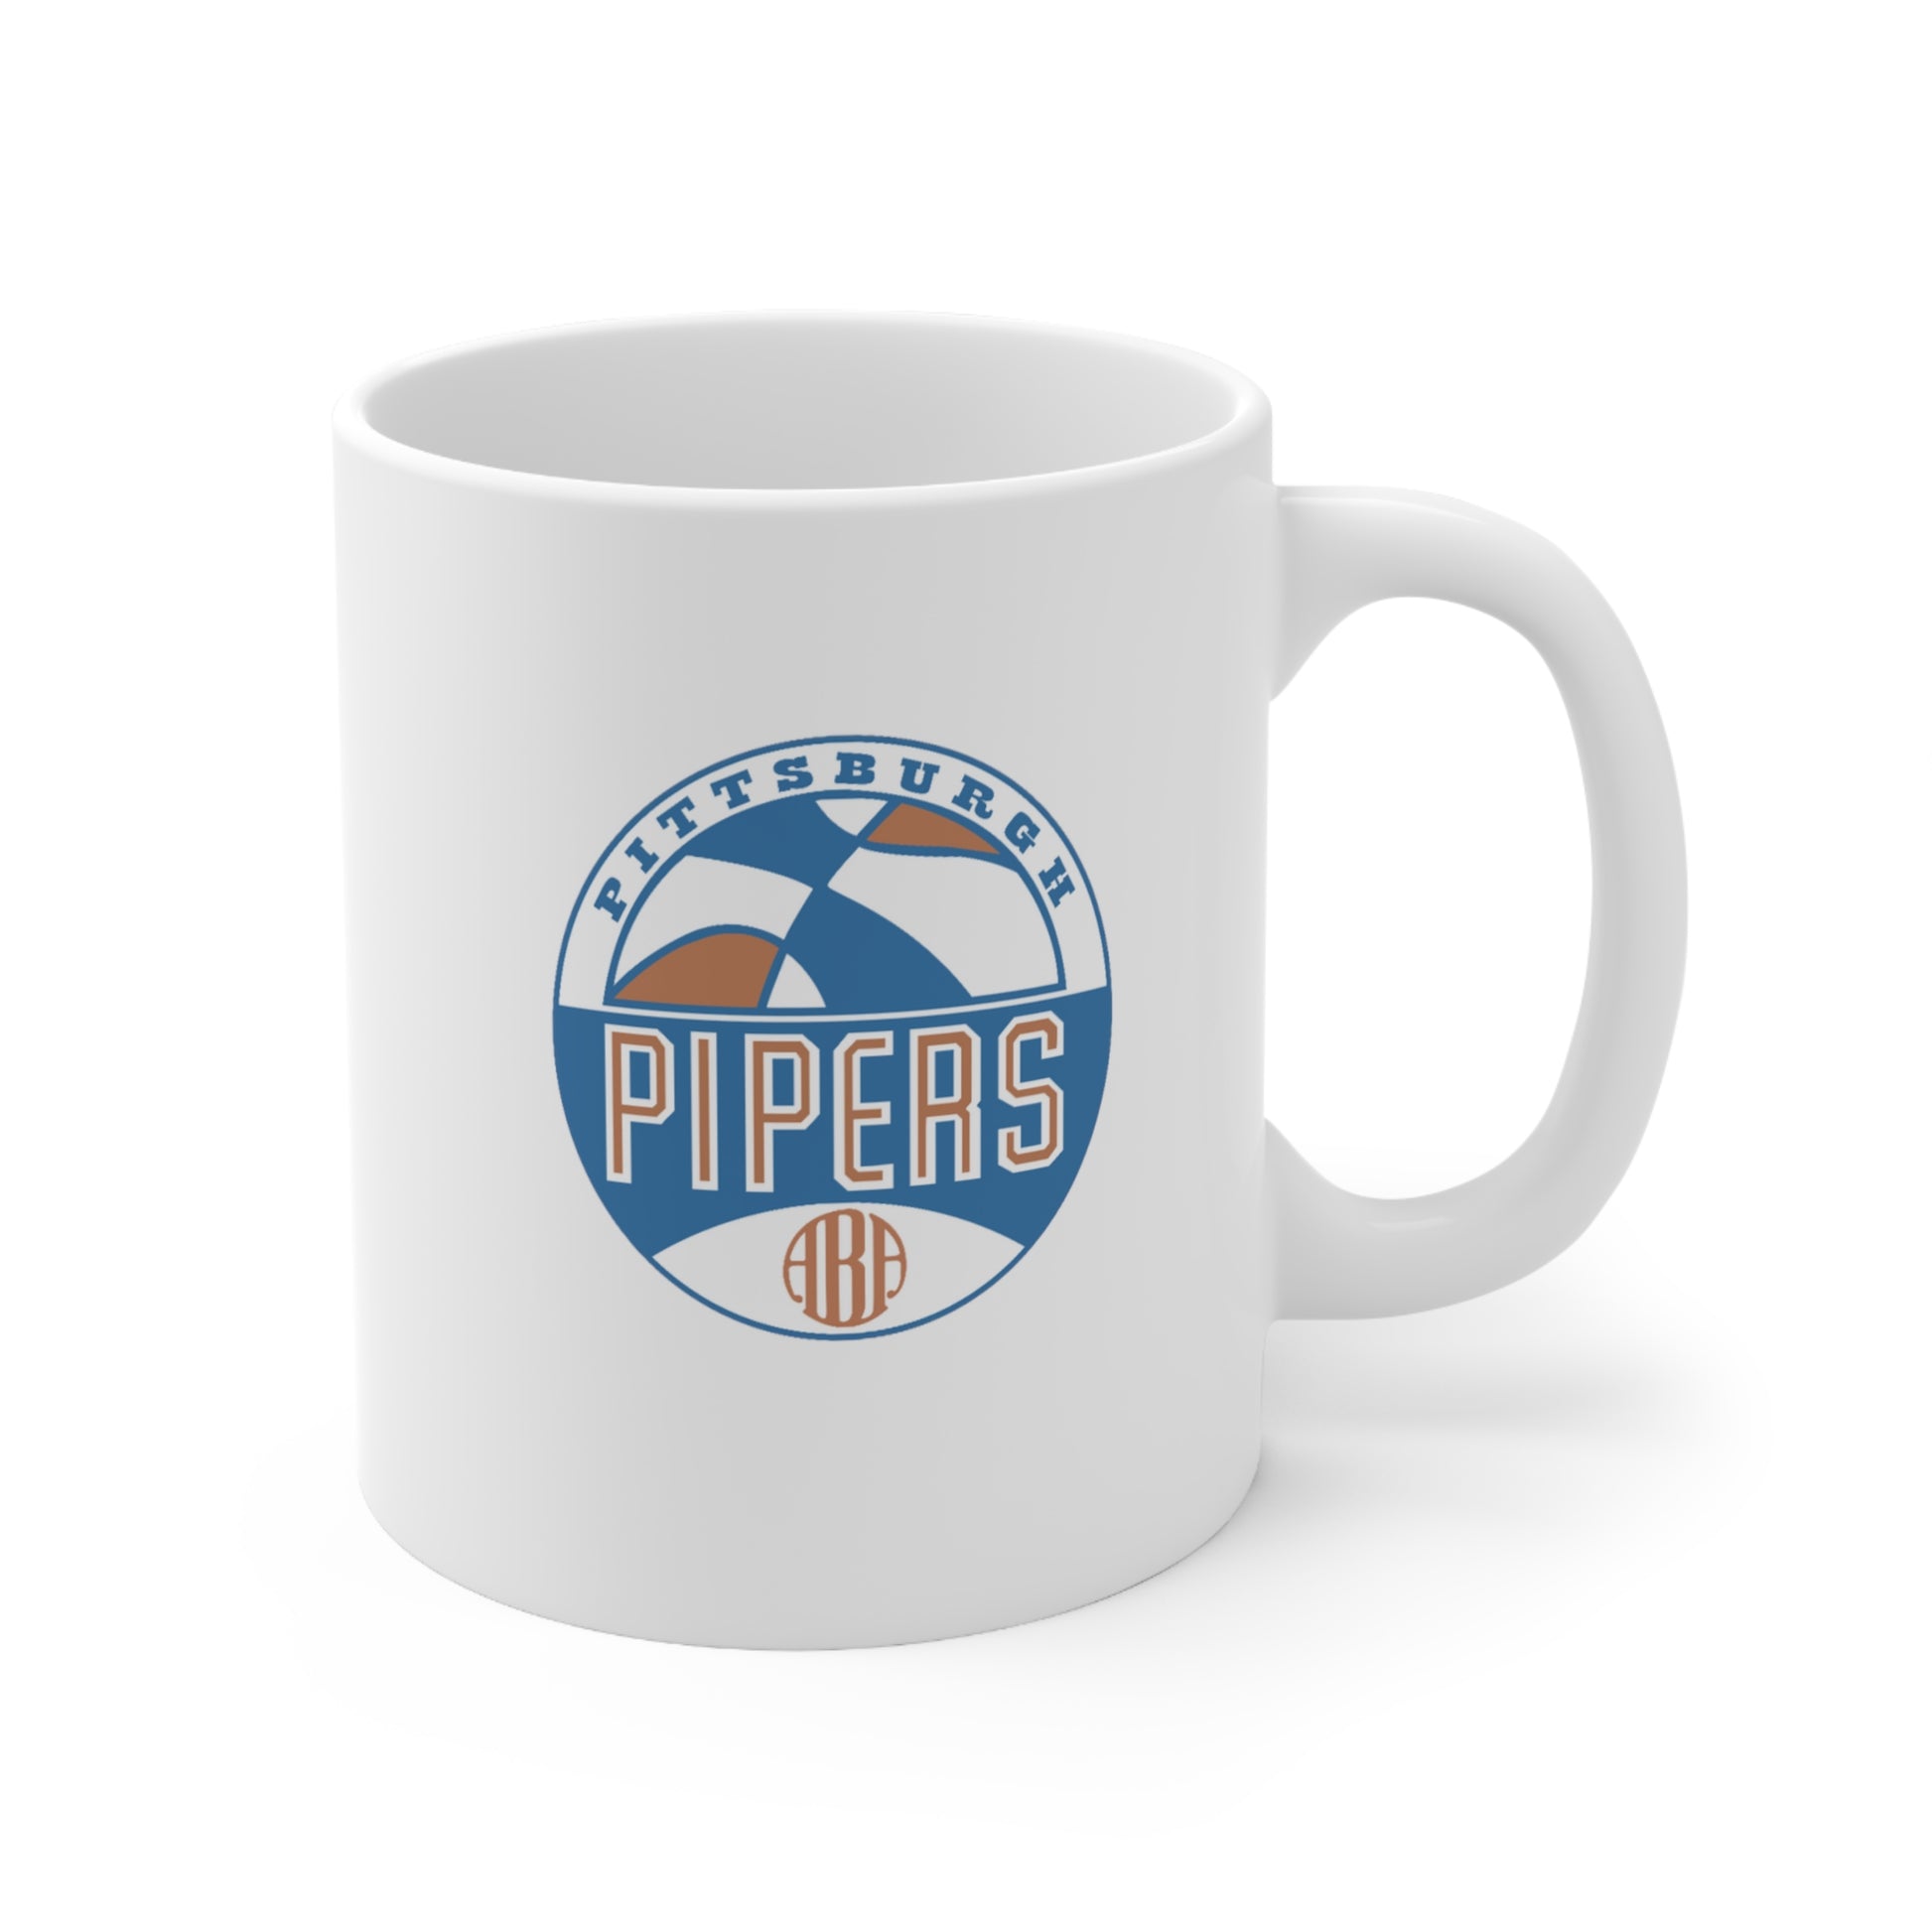 Pittsburgh Pipers Ceramic Mug